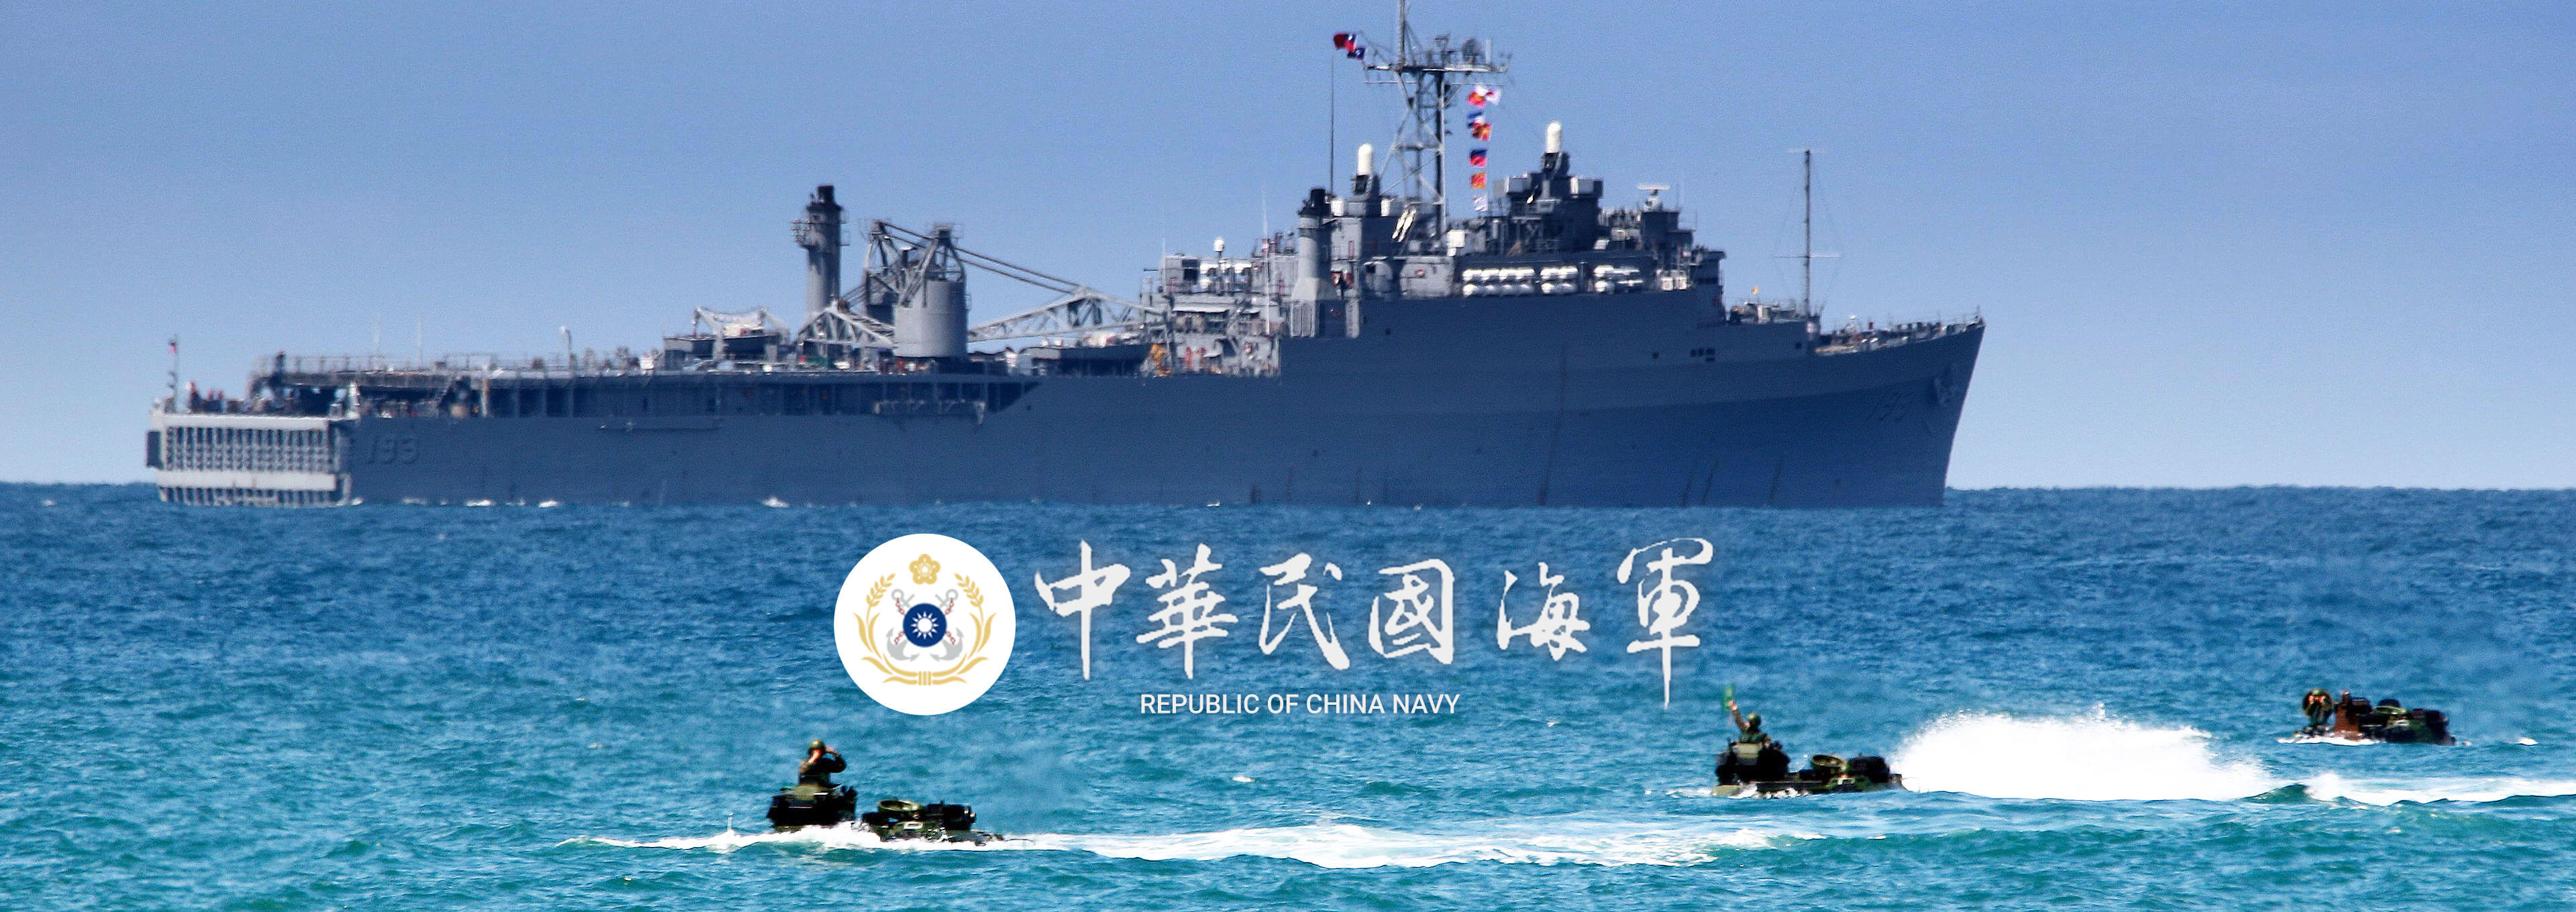 中華民國海軍船艦海上演習訓練及徽章形象圖